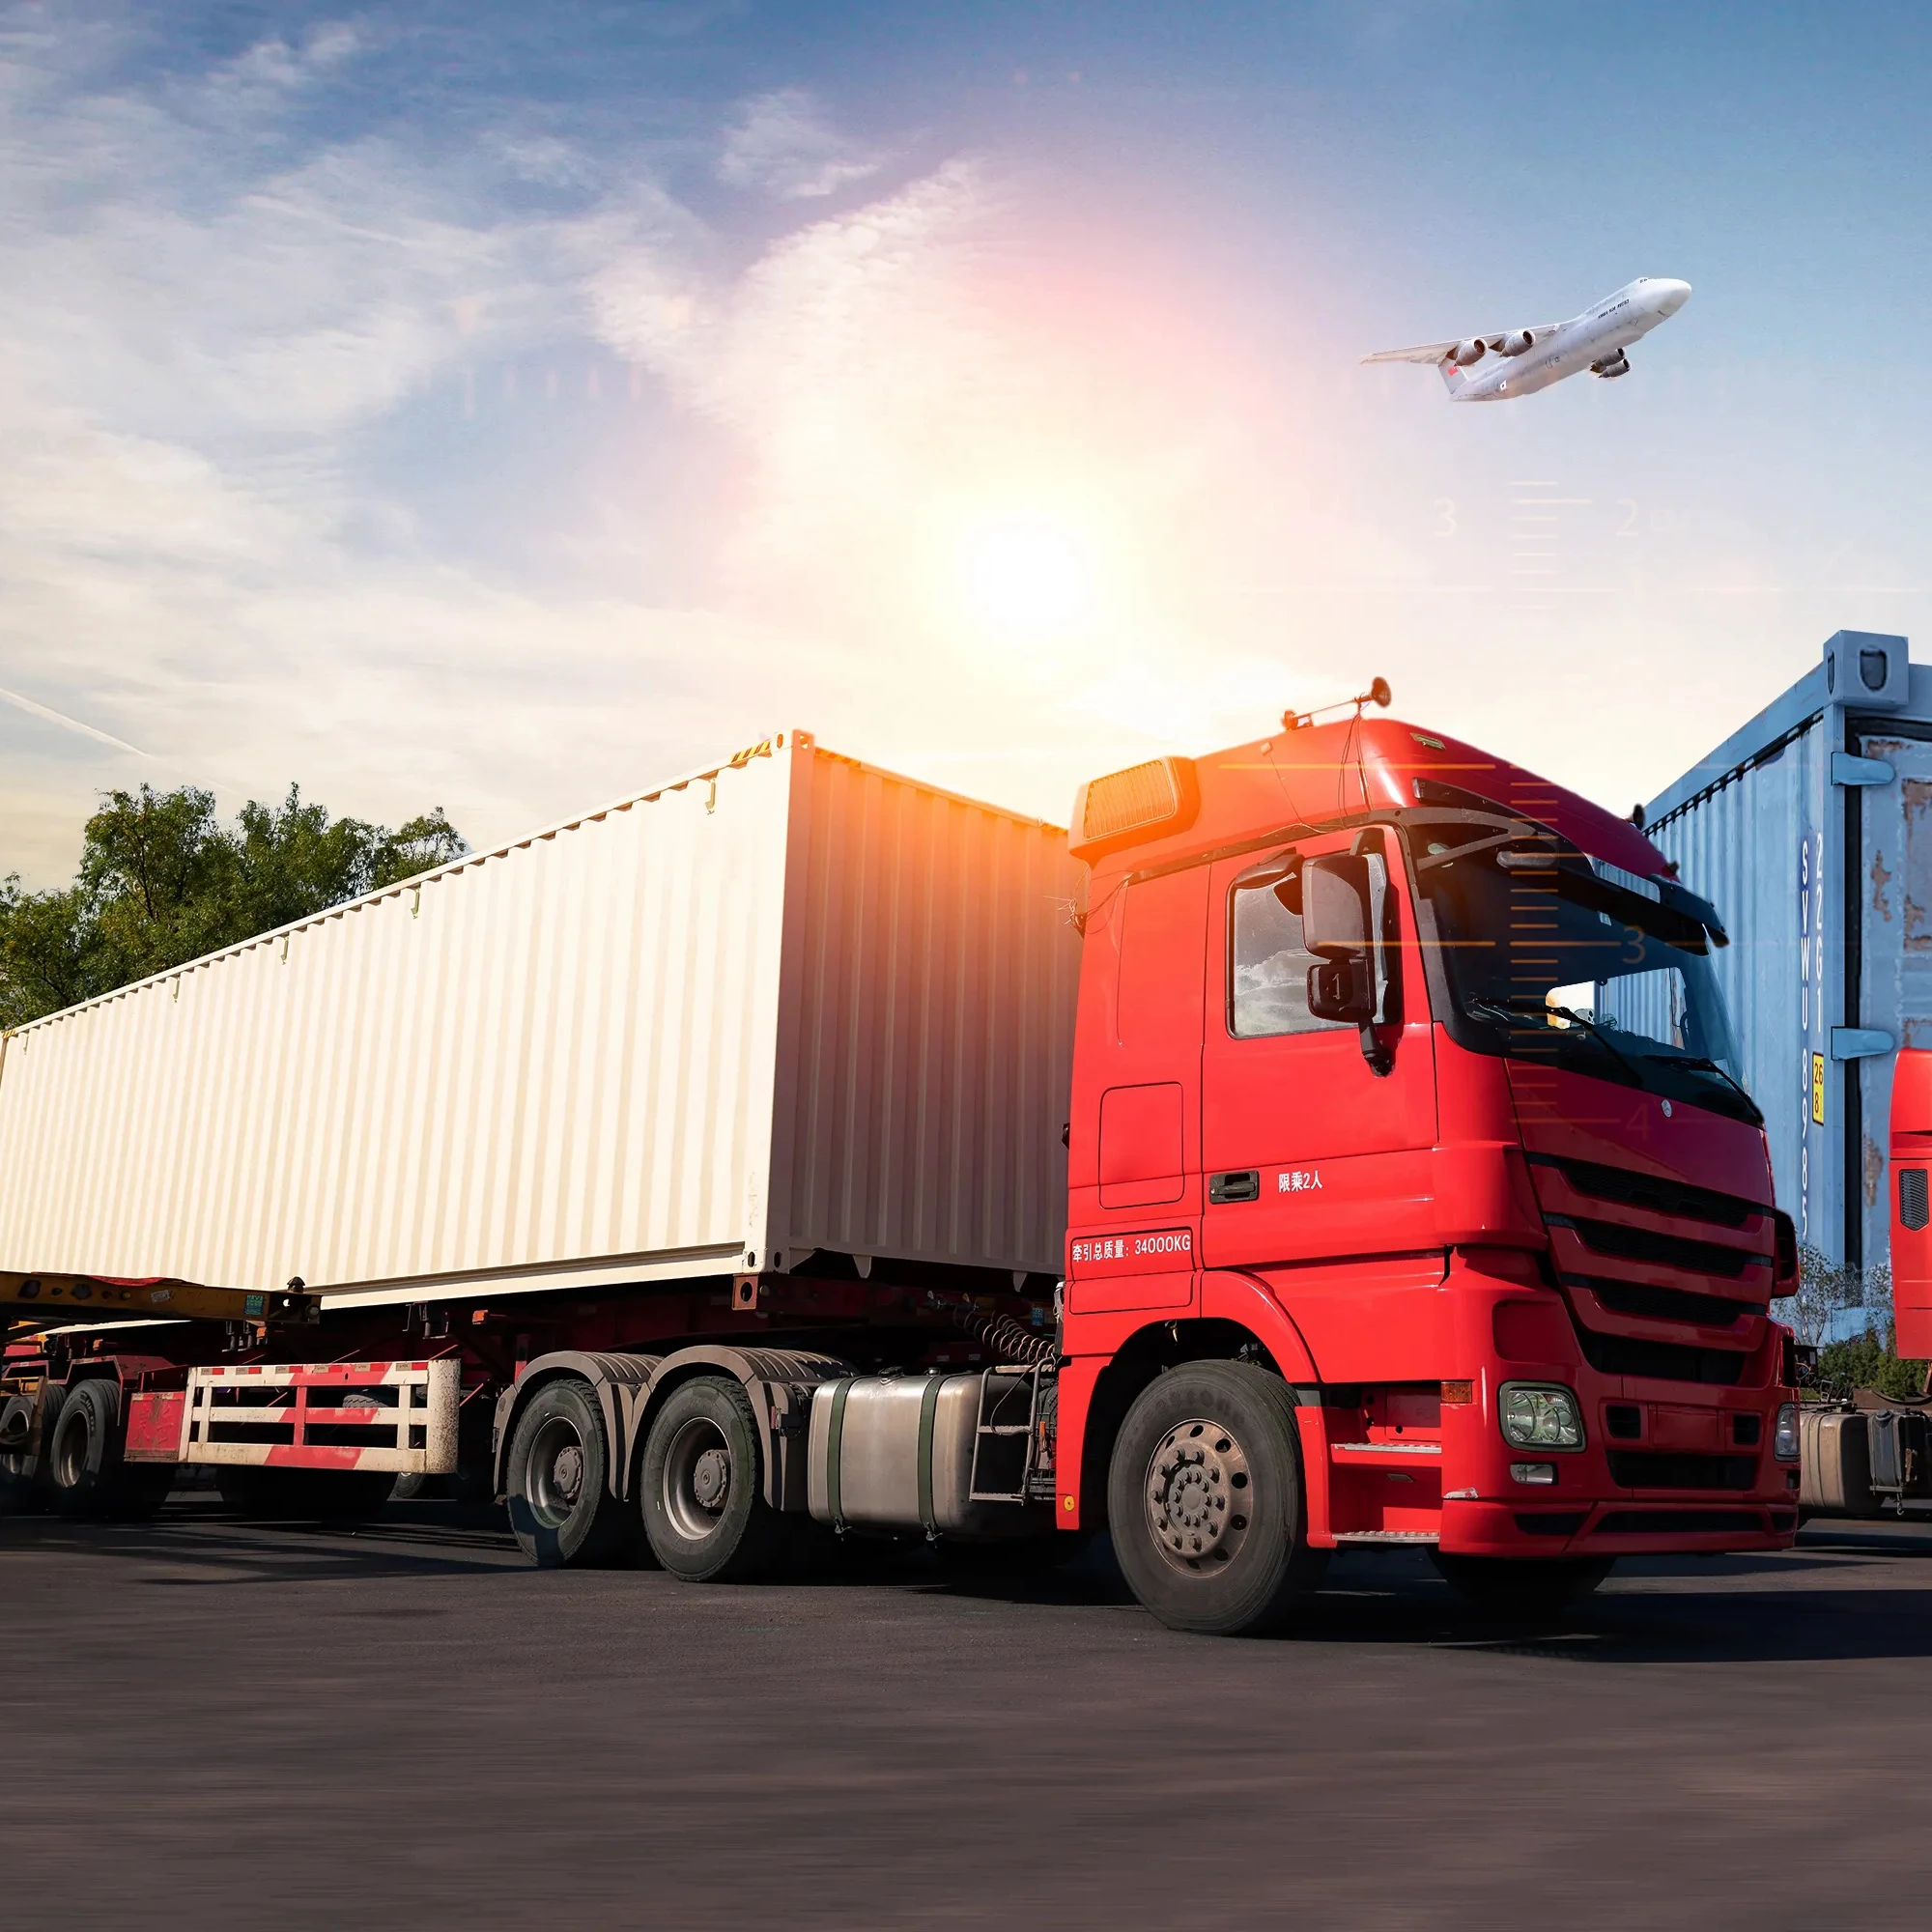 

Транспортировка грузовика в страны ЕС (DDP сервис) для углеродной колесной пары, вес упаковки 4 кг, Ориентировочный срок доставки 30-35 дней